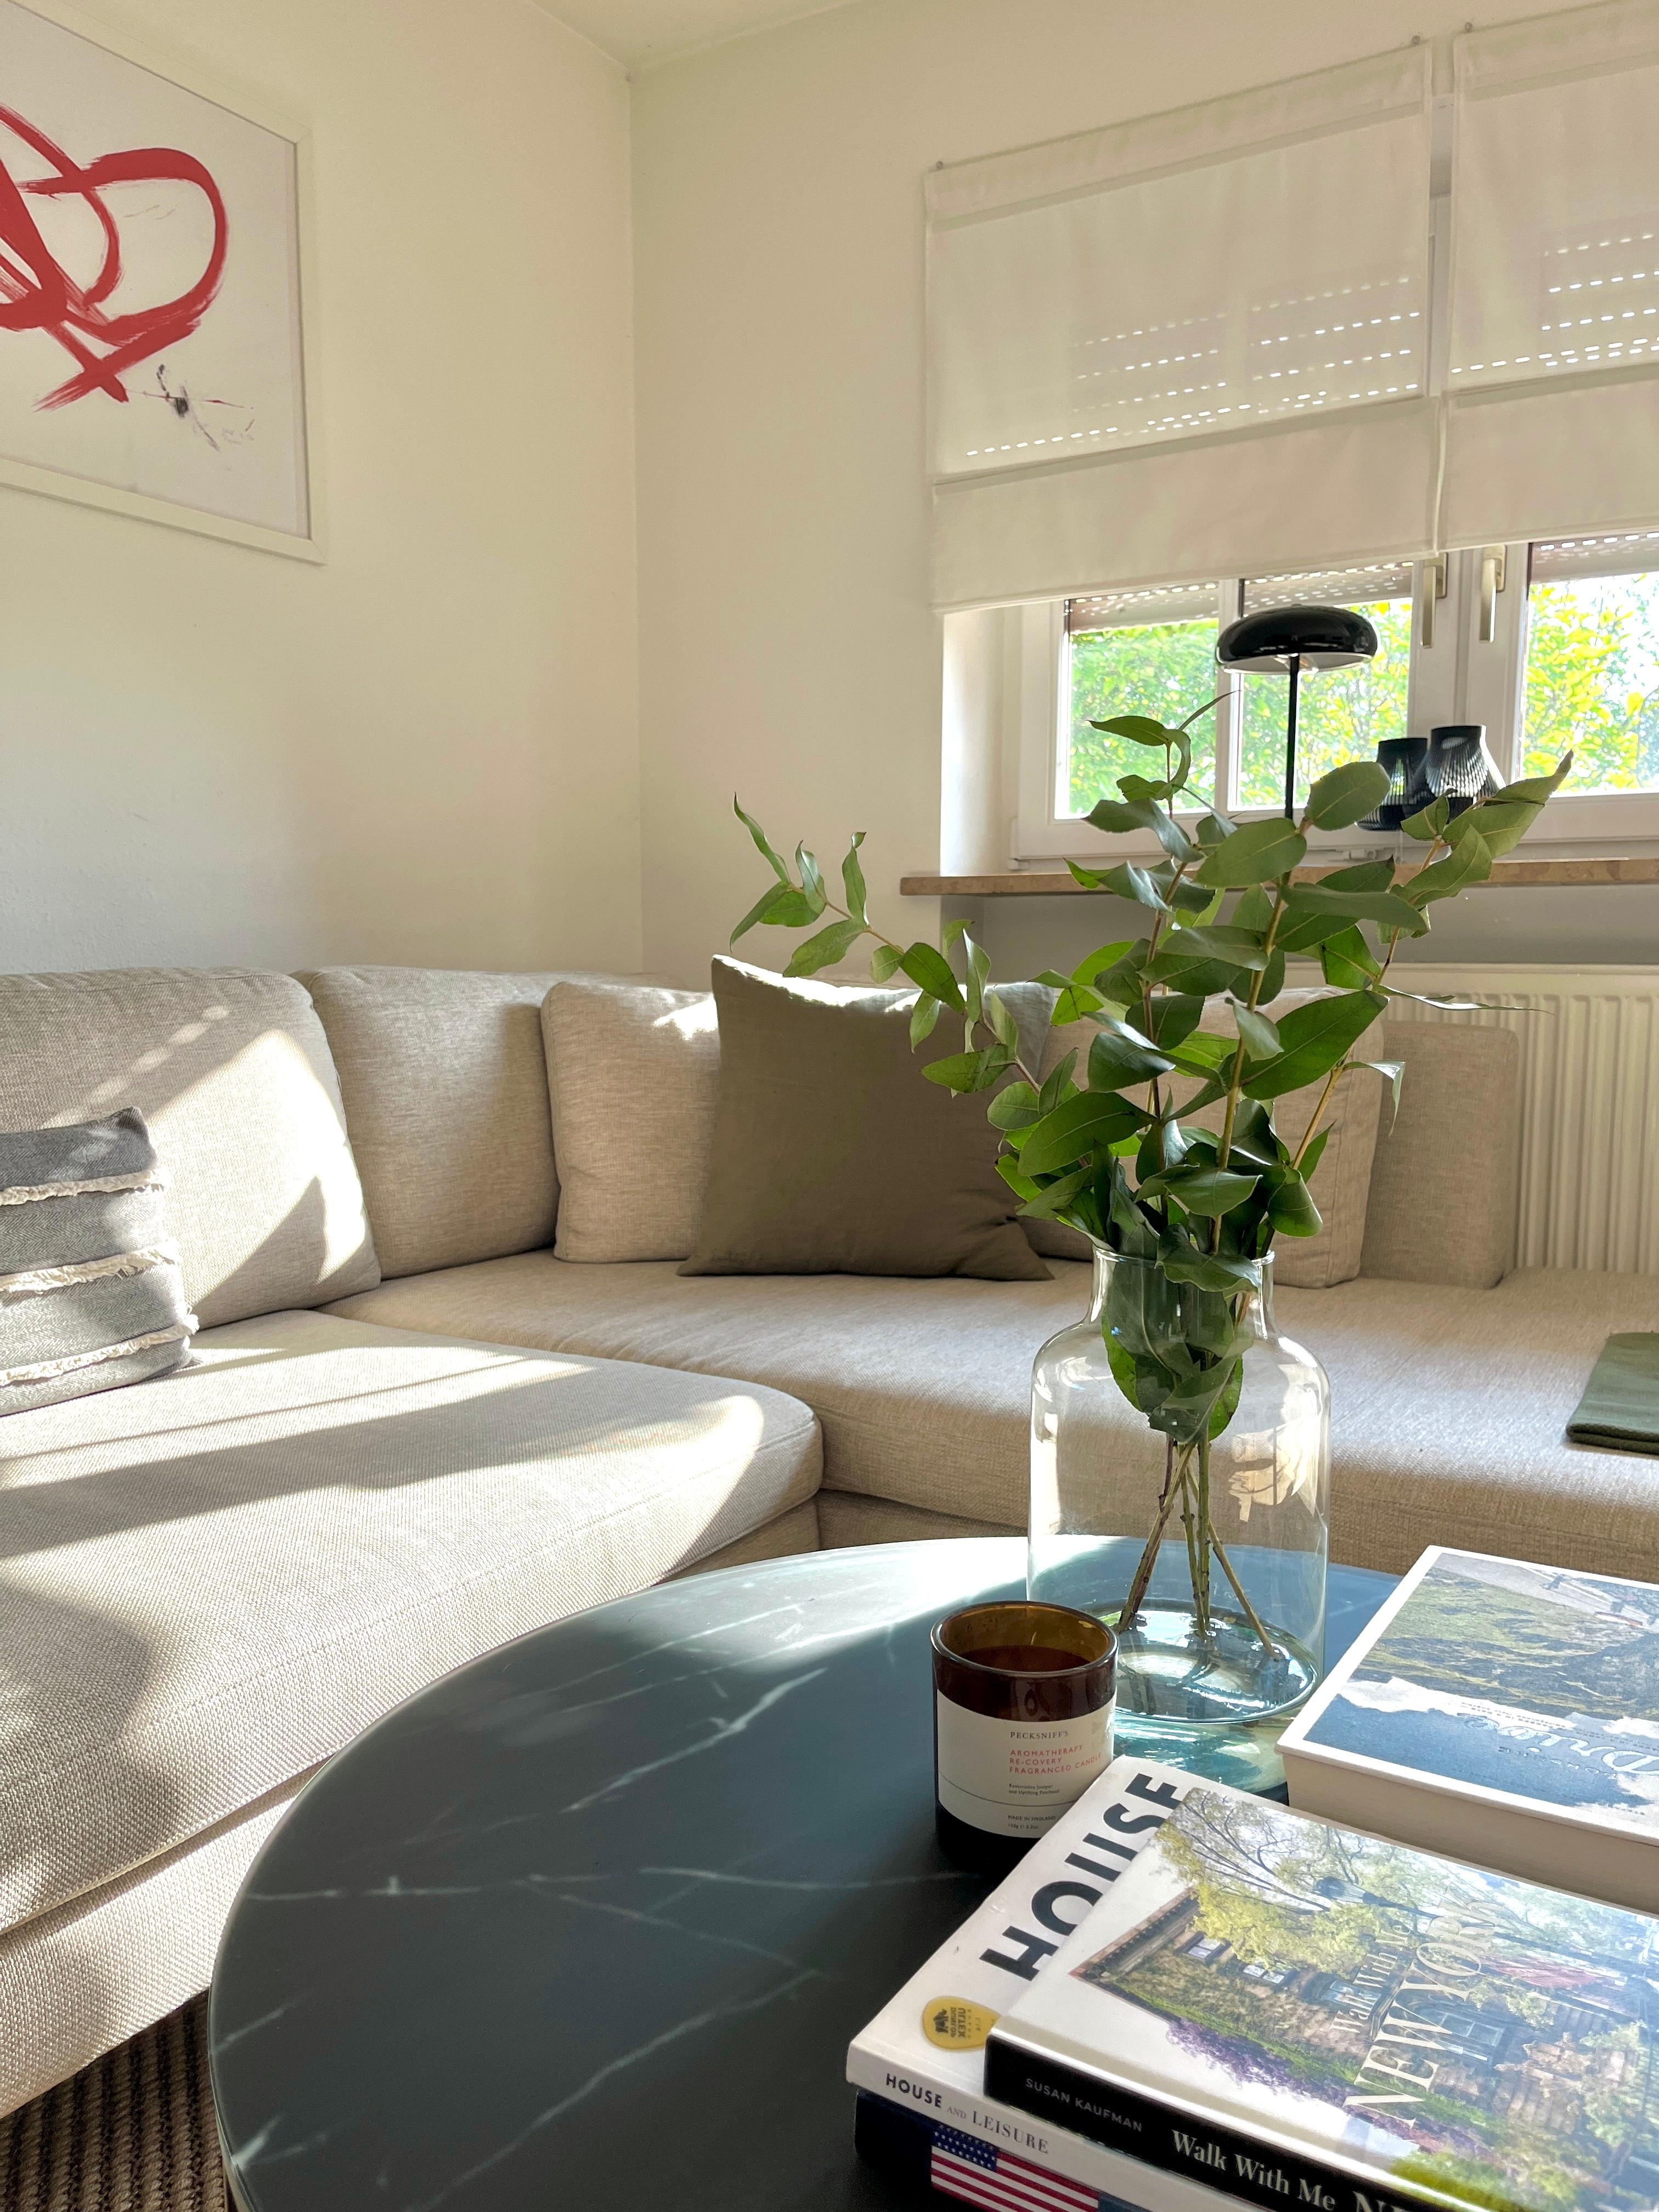 nimm Platz 🛋️ 
#couch#wohnzimmer#livingchallenge#freshflowers#coffeetable#coffeetablebooks#pigcasso#couchstyle#couching